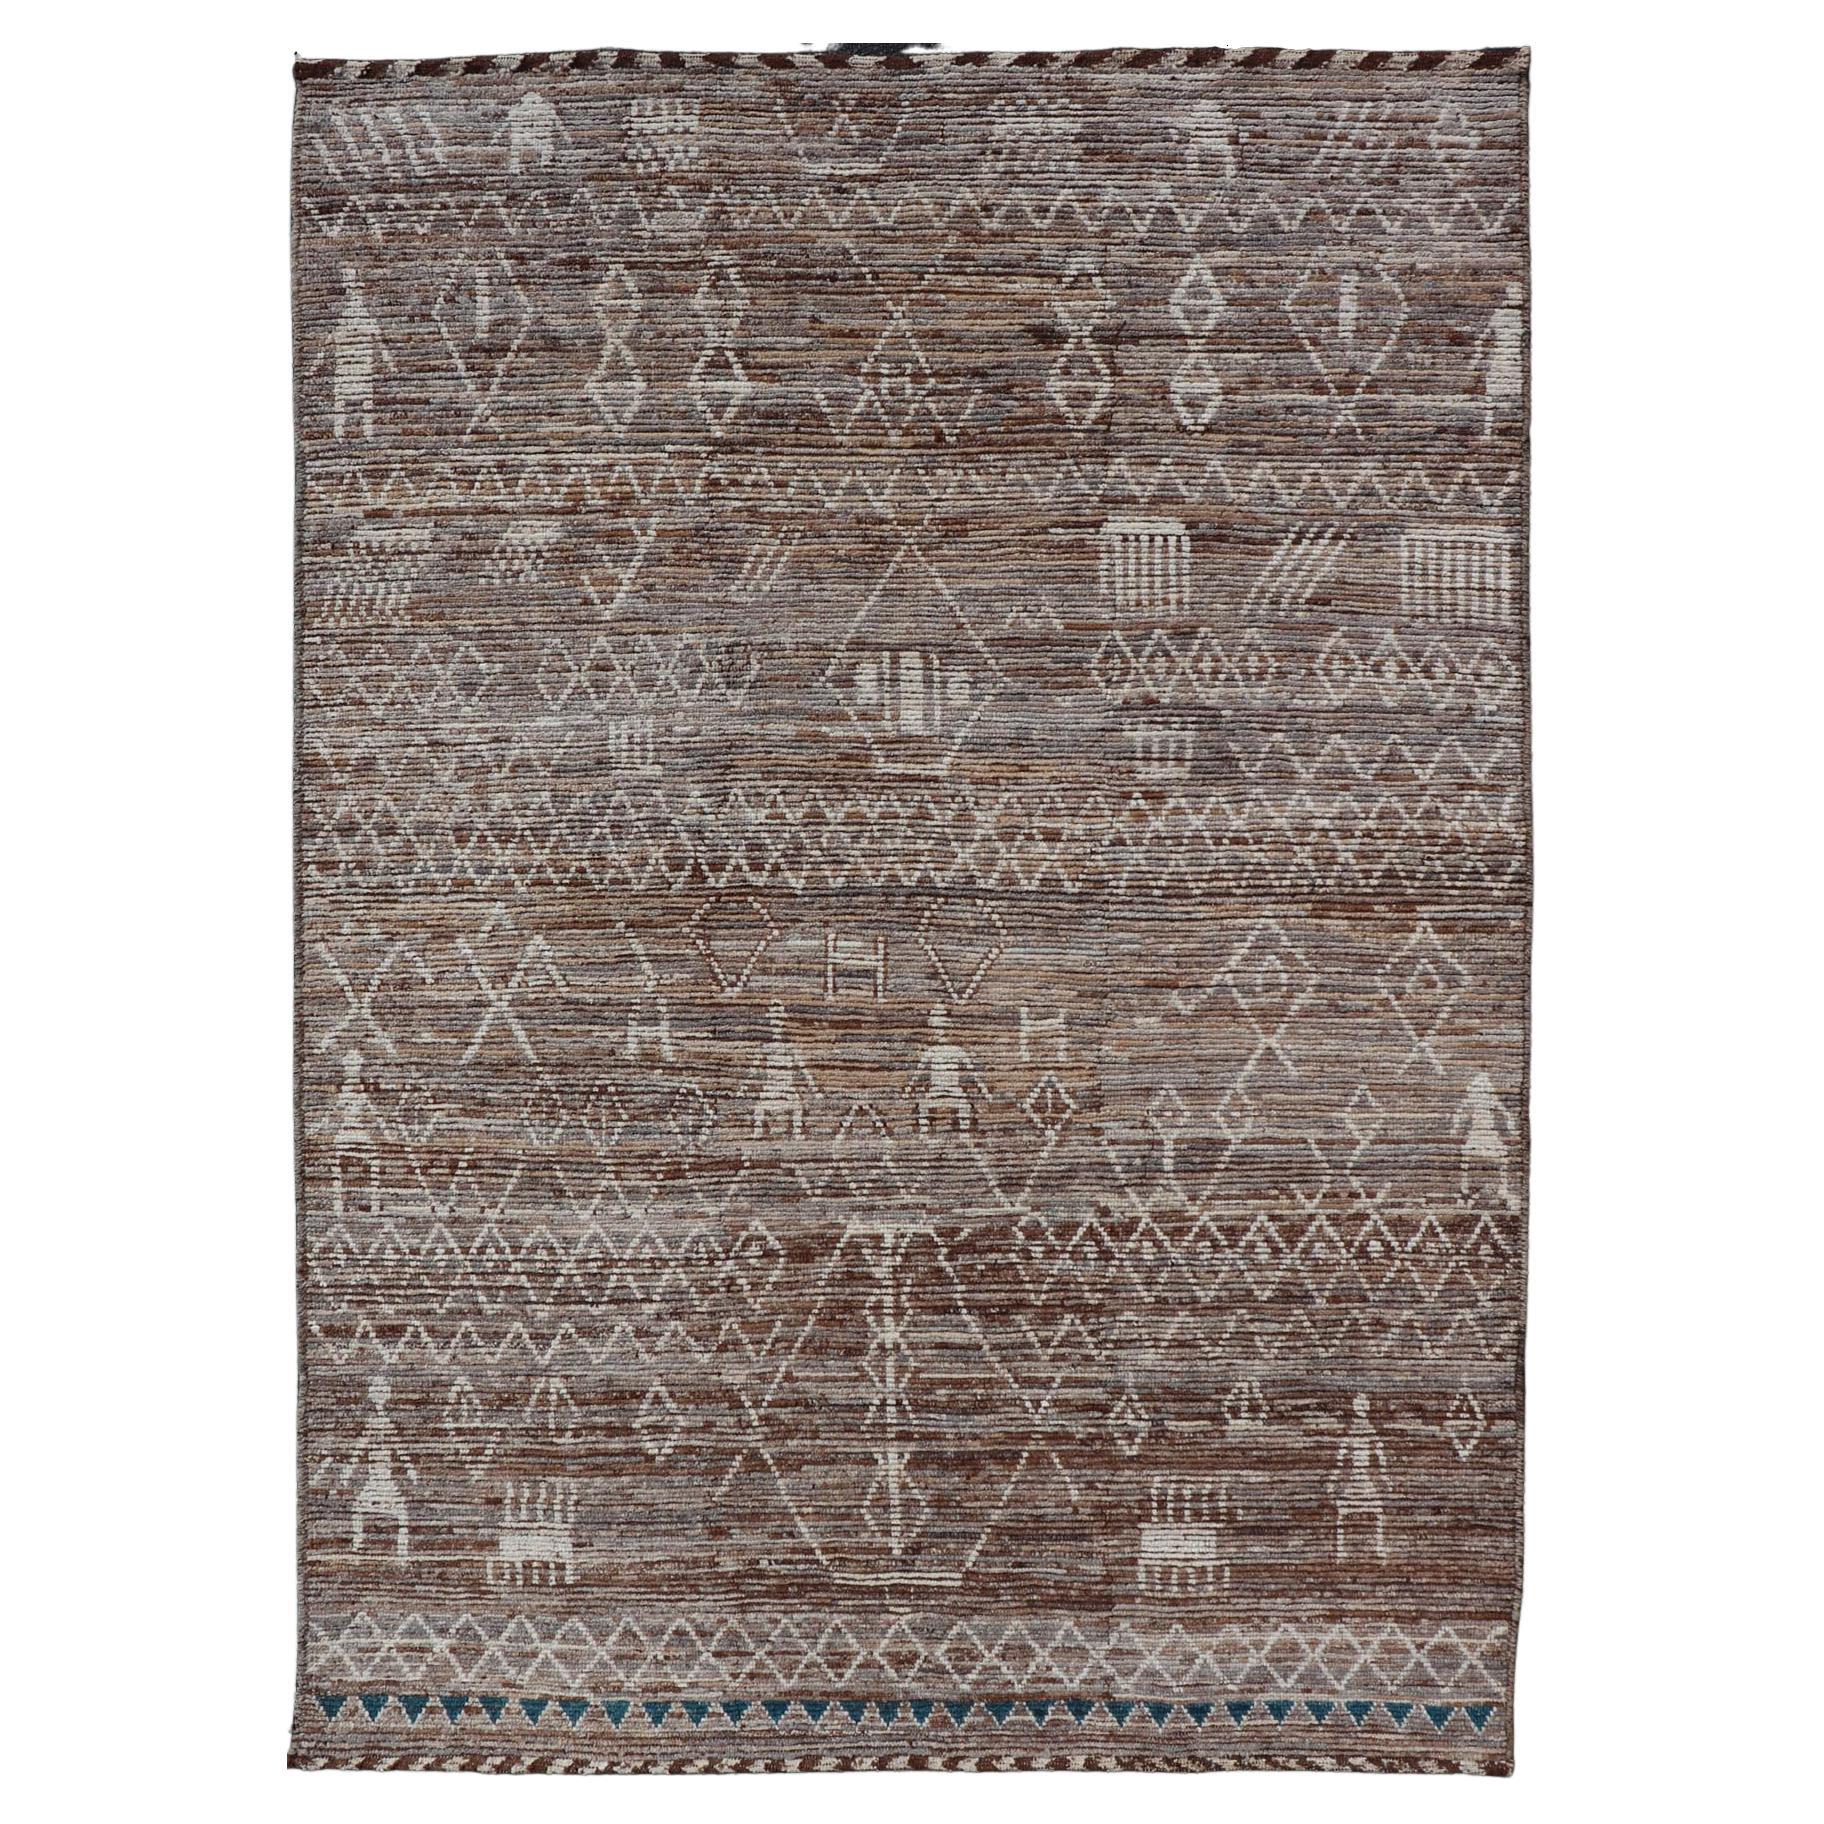 Moderner Teppich im marokkanischen Stil mit Rautenmuster in erdigen Tönen